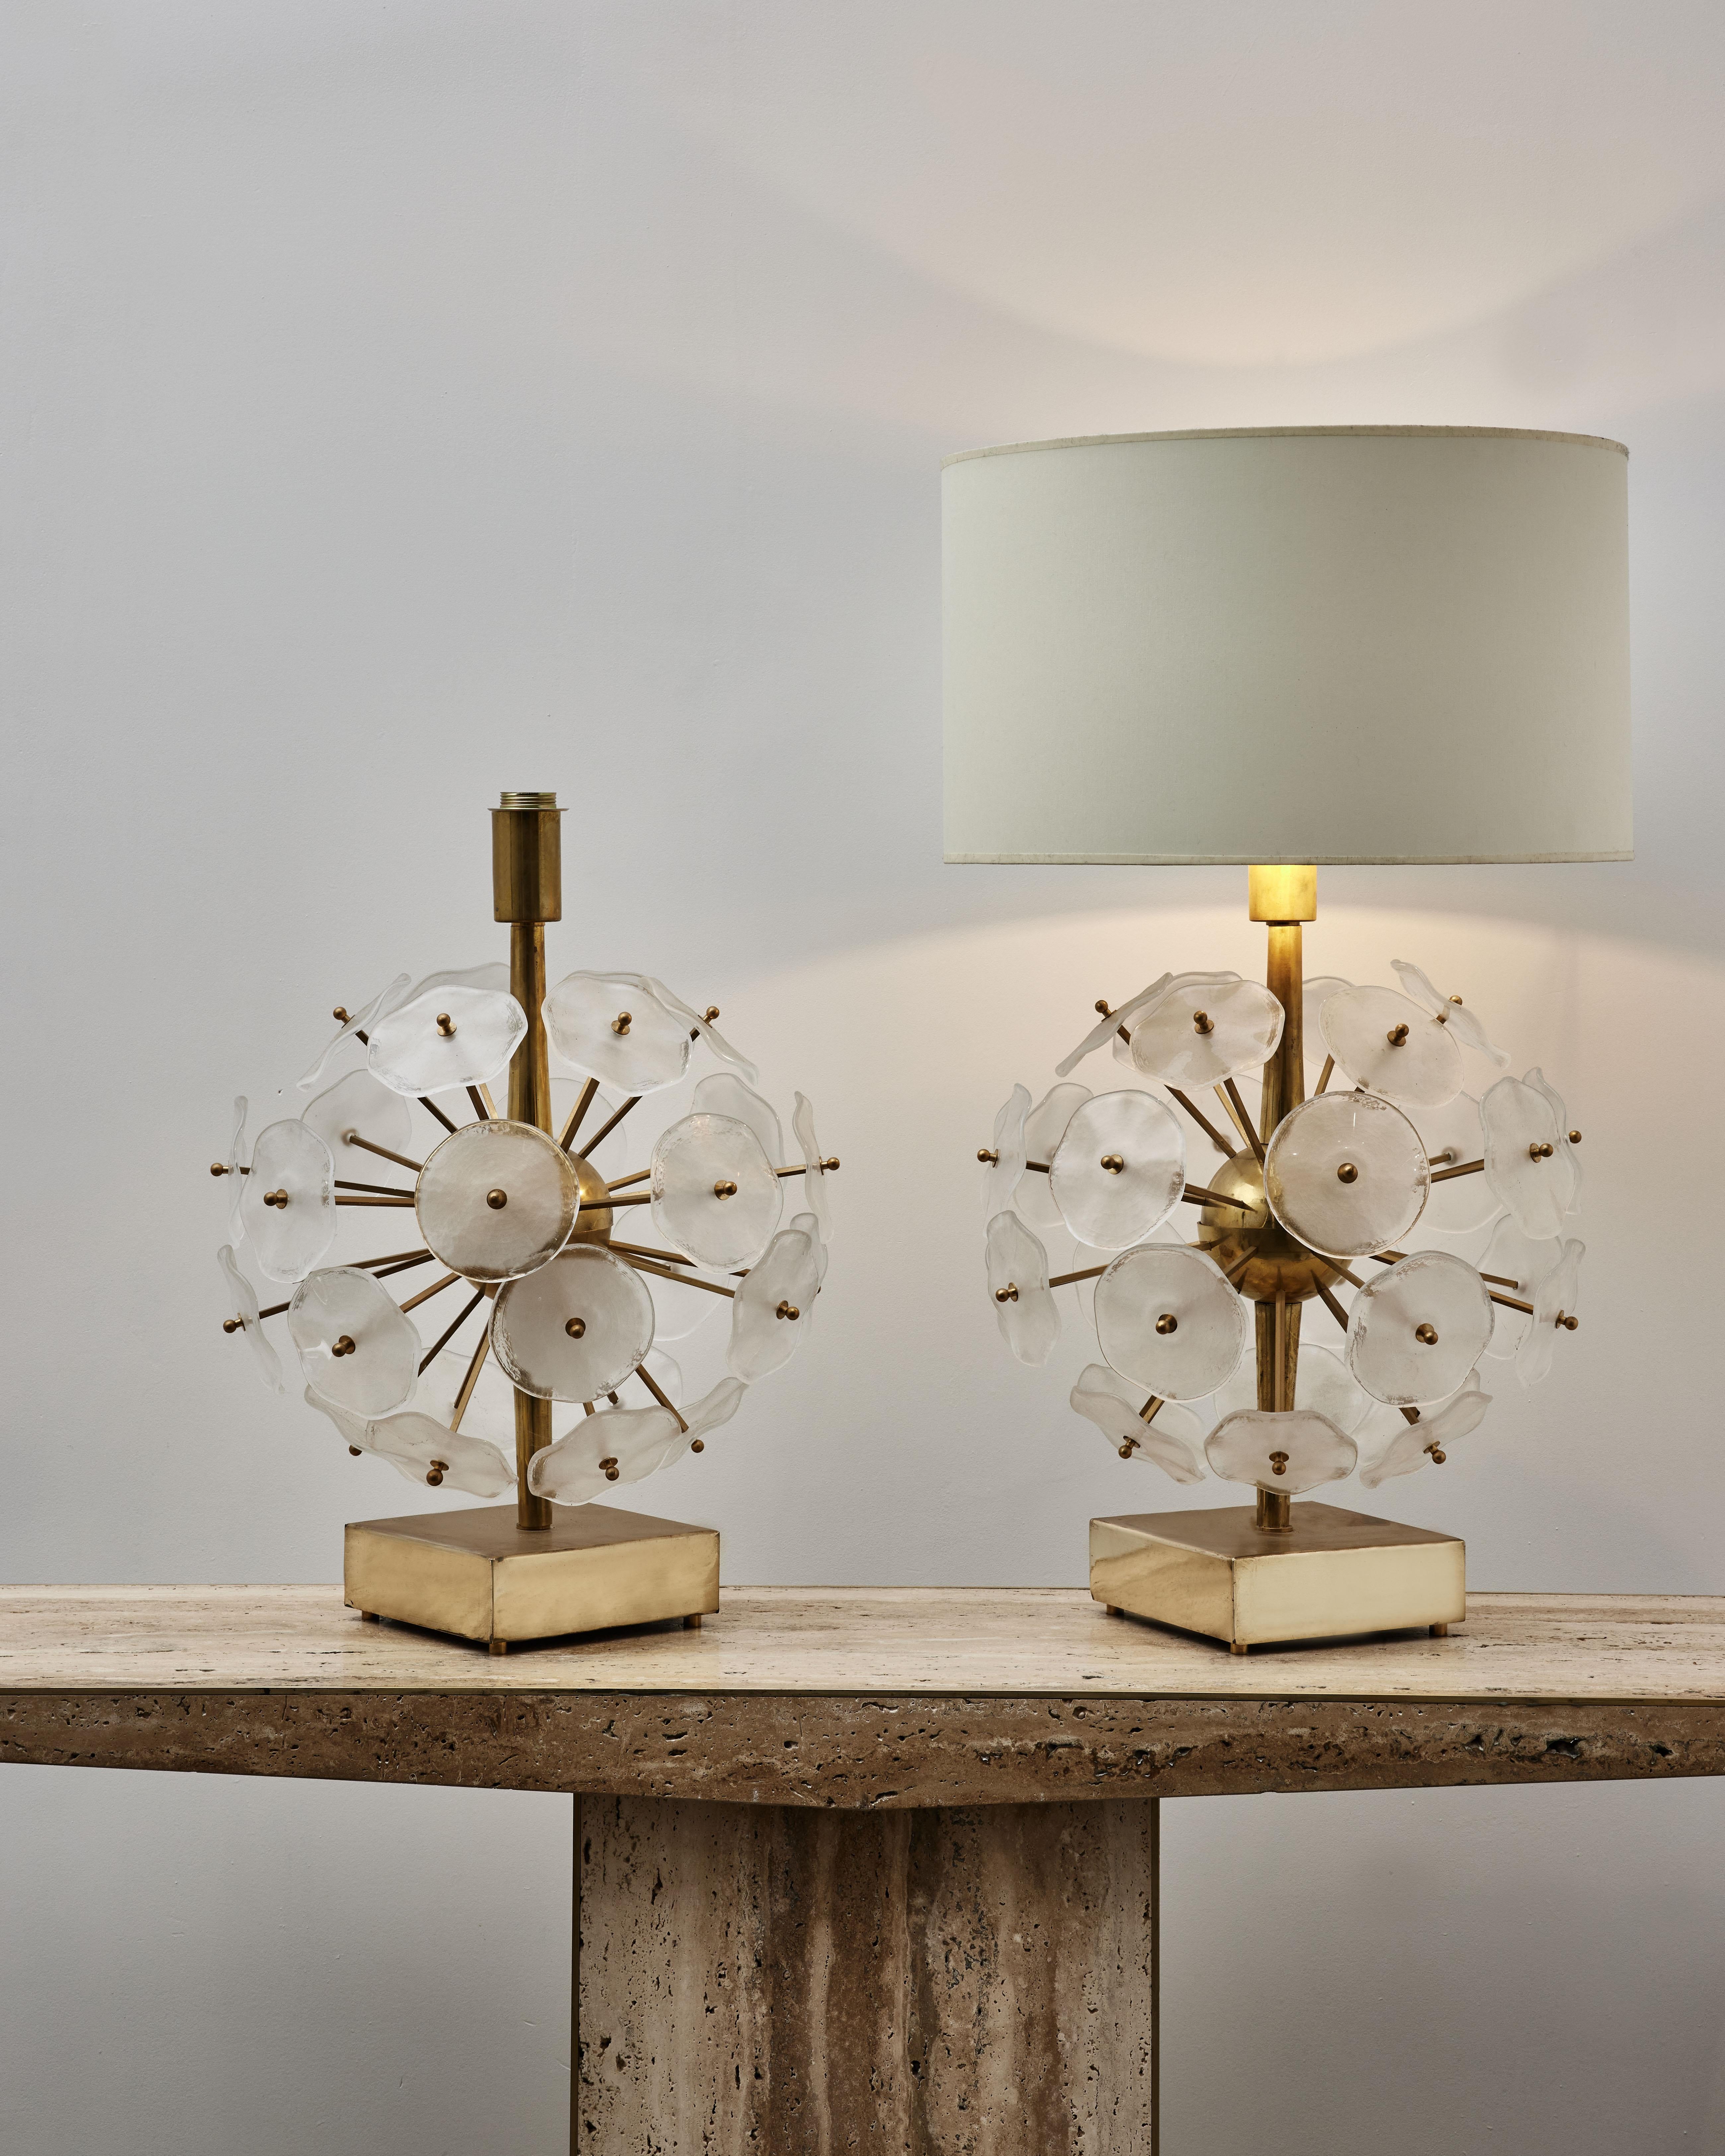 Paire de lampes de table Sputnik en laiton avec des plaques en verre de Murano sculptées.
Création par le Studio Glustin.

Prix et dimensions sans abat-jour.